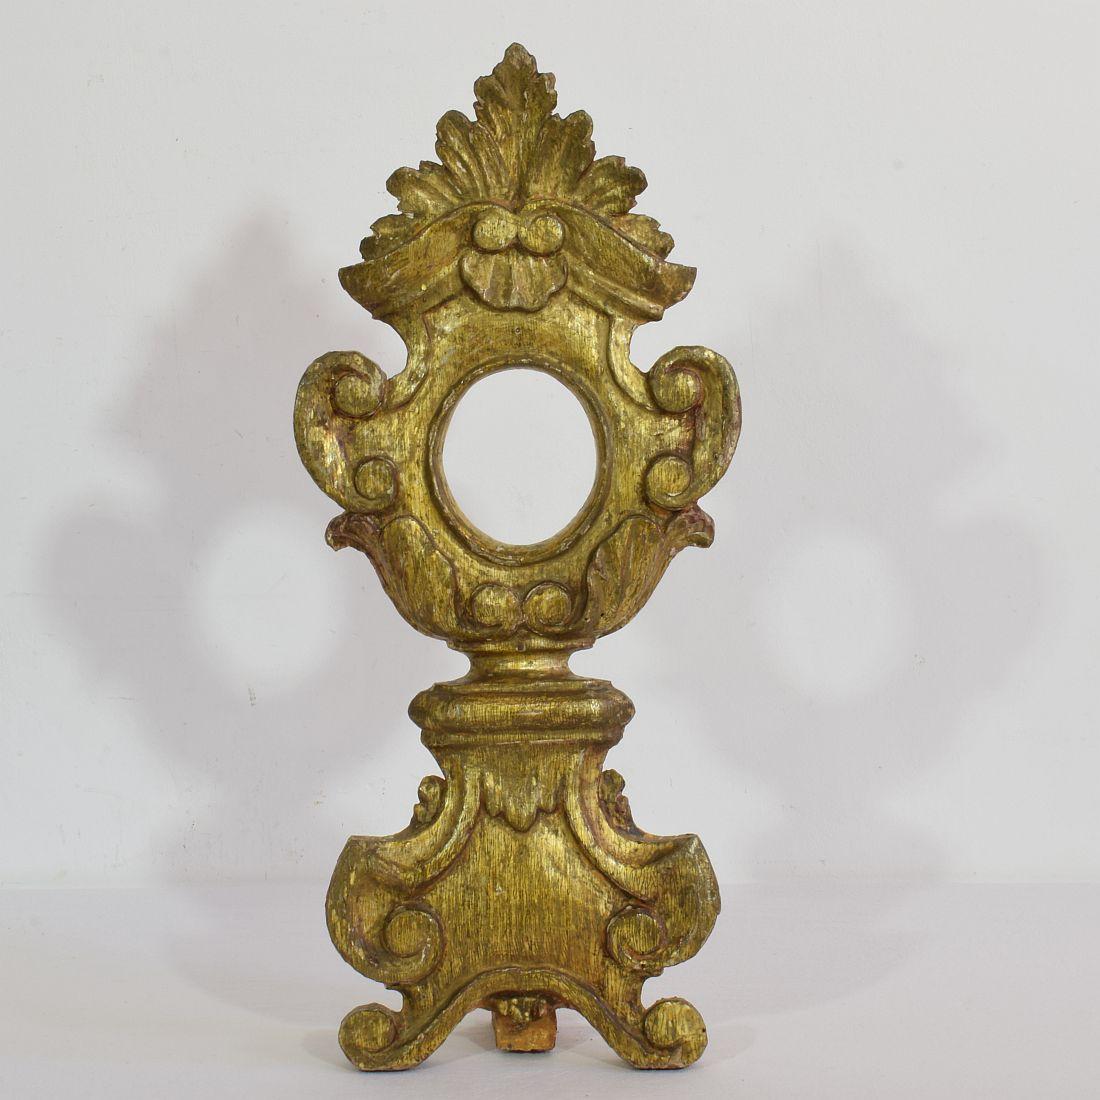 Schöner und detaillierter Reliquienhalter mit seiner ursprünglichen Vergoldung,
Italien, um 1750. Verwittert und kleine Schäden.